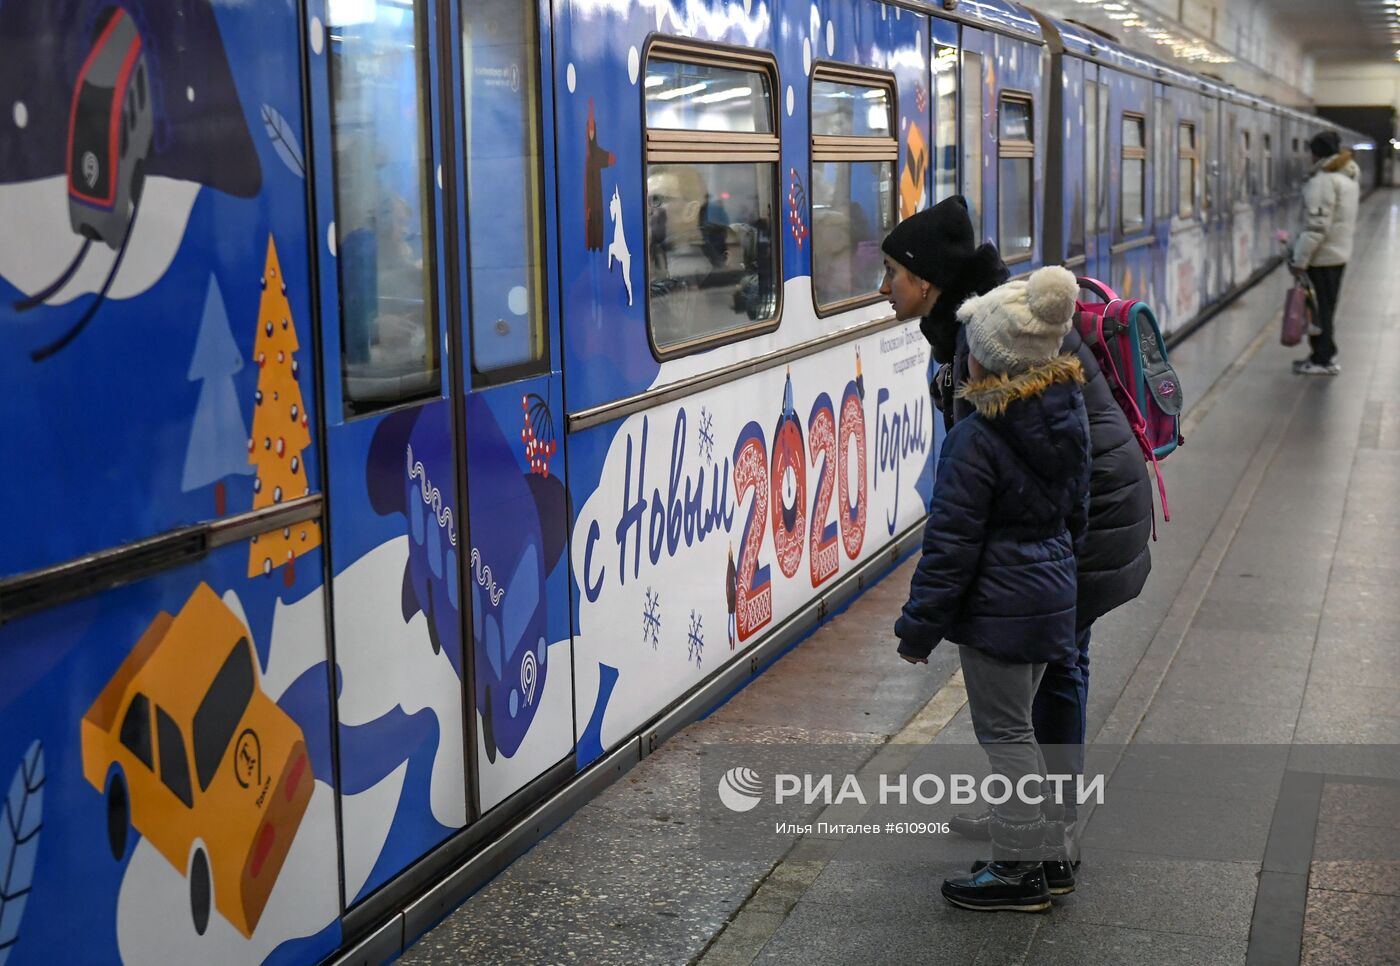 Новогодние поезда запустили в Московском метро